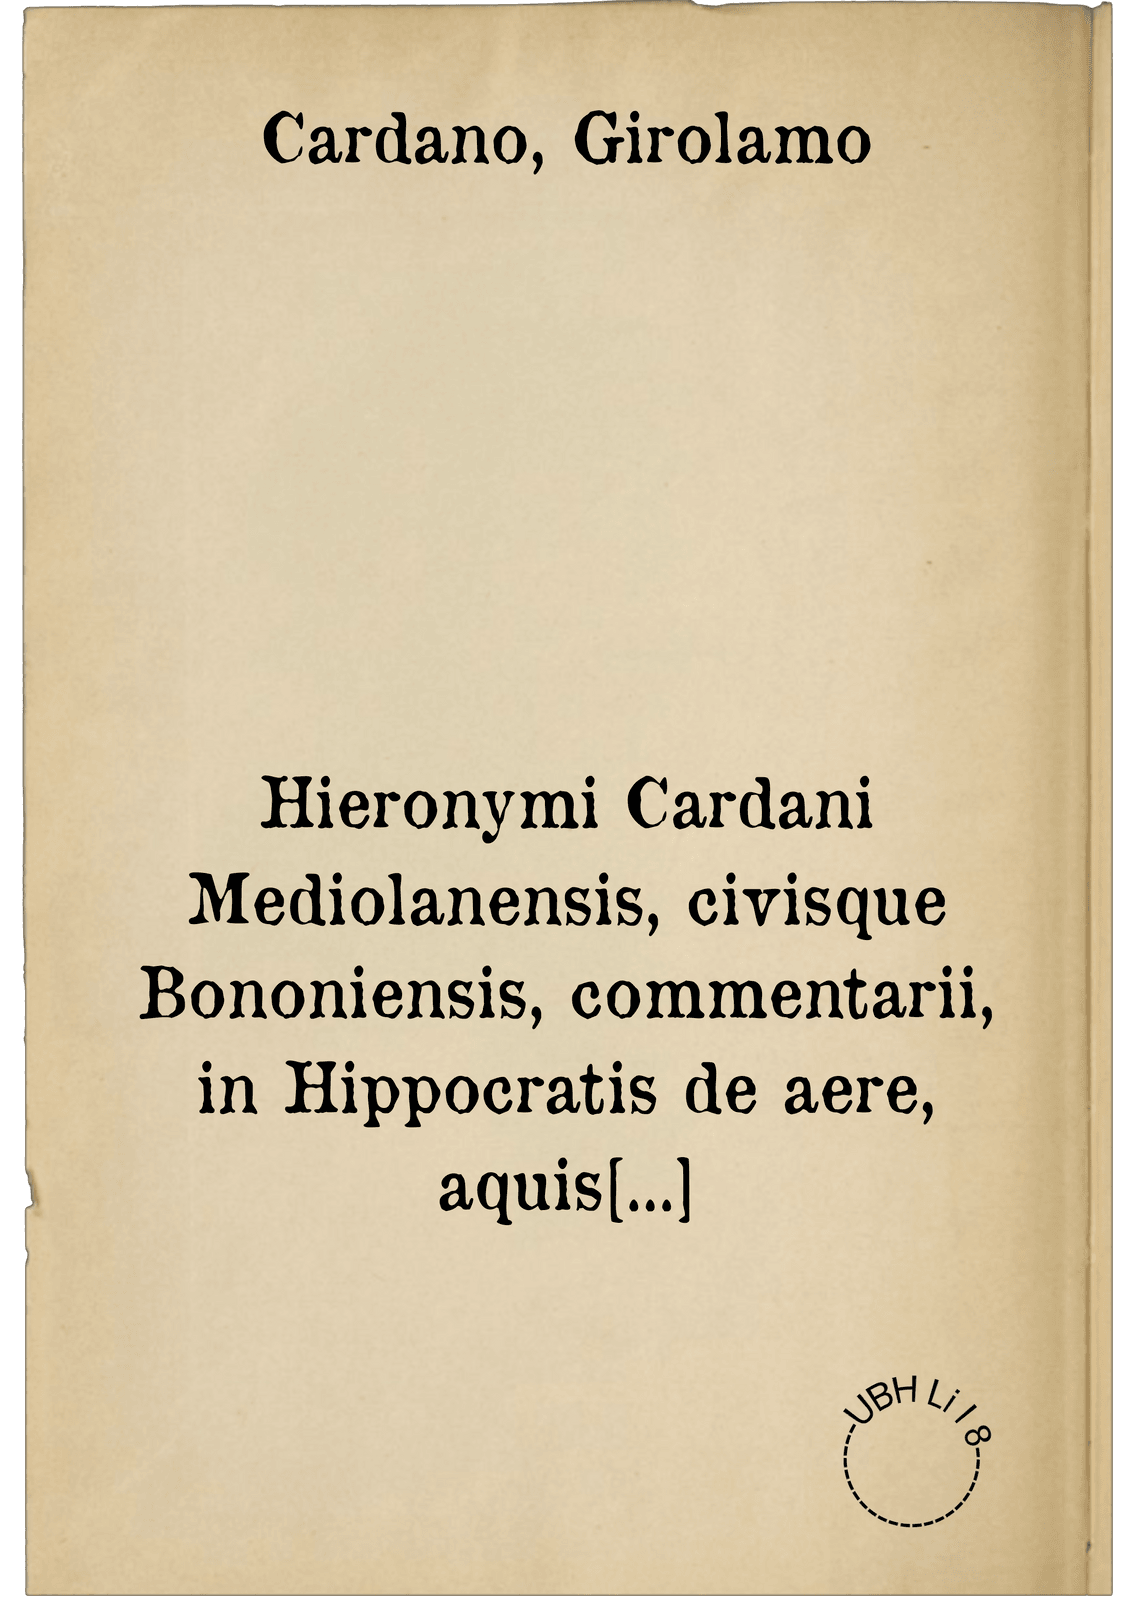 Hieronymi Cardani Mediolanensis, civisque Bononiensis, commentarii, in Hippocratis de aere, aquis et locis opus ... in CVIII. lectiones divisum .... ; Accedunt praeterea ... D. Hieronymi Cardani ad Illustrissimum Cardinalem I. Alciatum oratio ... quam Tricipitis Geryonis aut Cerberi canem autor appellat .... Item, Ioan Baptistae Card. medici ... de fulgure lib. unus ; Item, D. Hier. Cardani consilia tria in gravissimus variisque morbis ... : I. pro quodam theologo, II. pro Illustriss. D. Fabritio Austriaco Corregii principe, III. pro Illustriss. cardinali S. Clementis ...